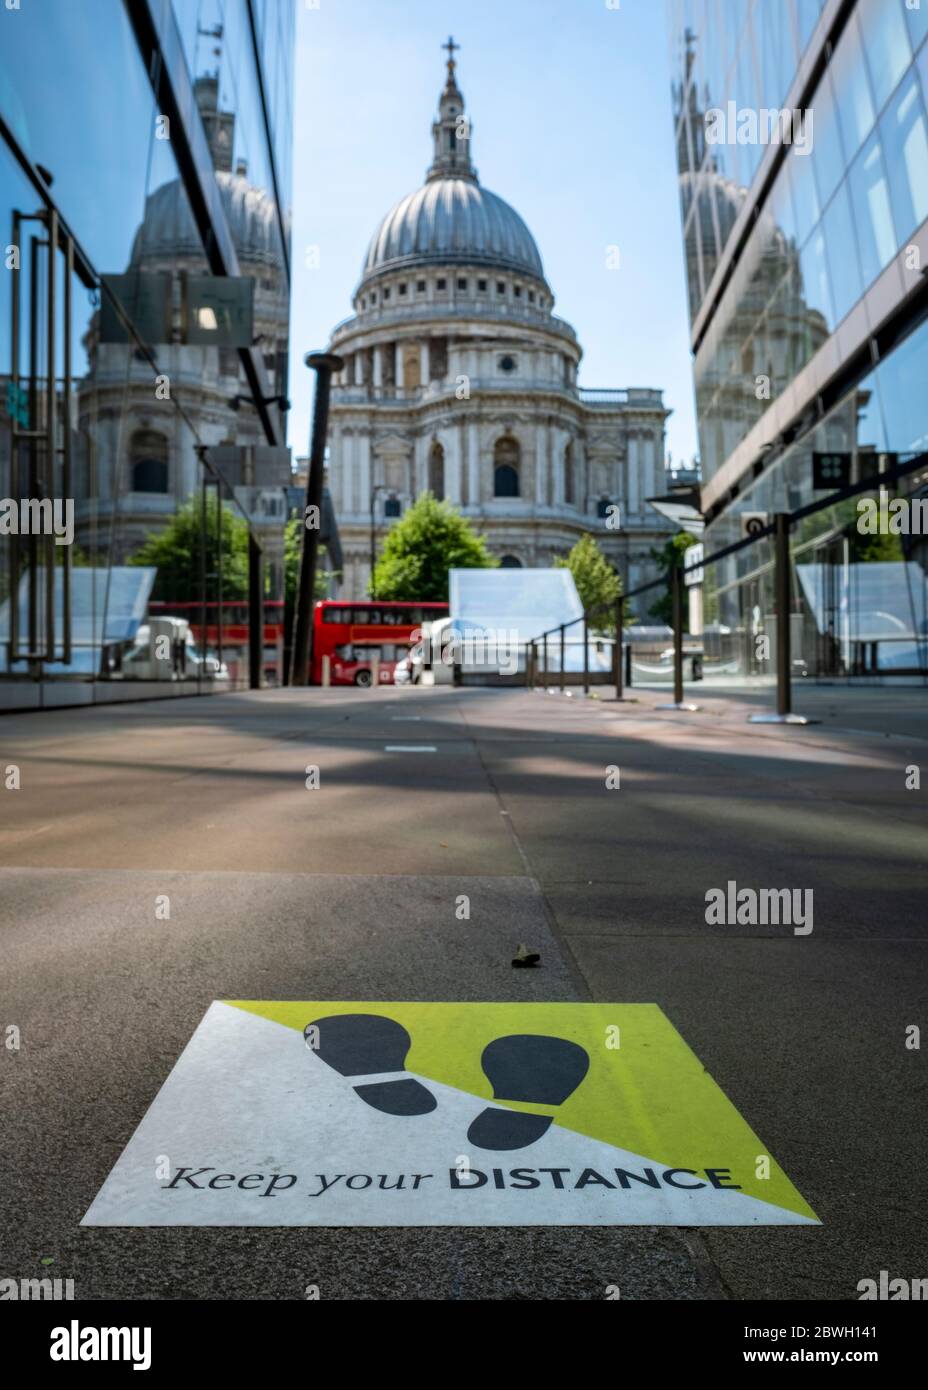 Londres-juin 2020 : autocollants de sol avec guidage social de distance prêt pour le maintien facile Banque D'Images